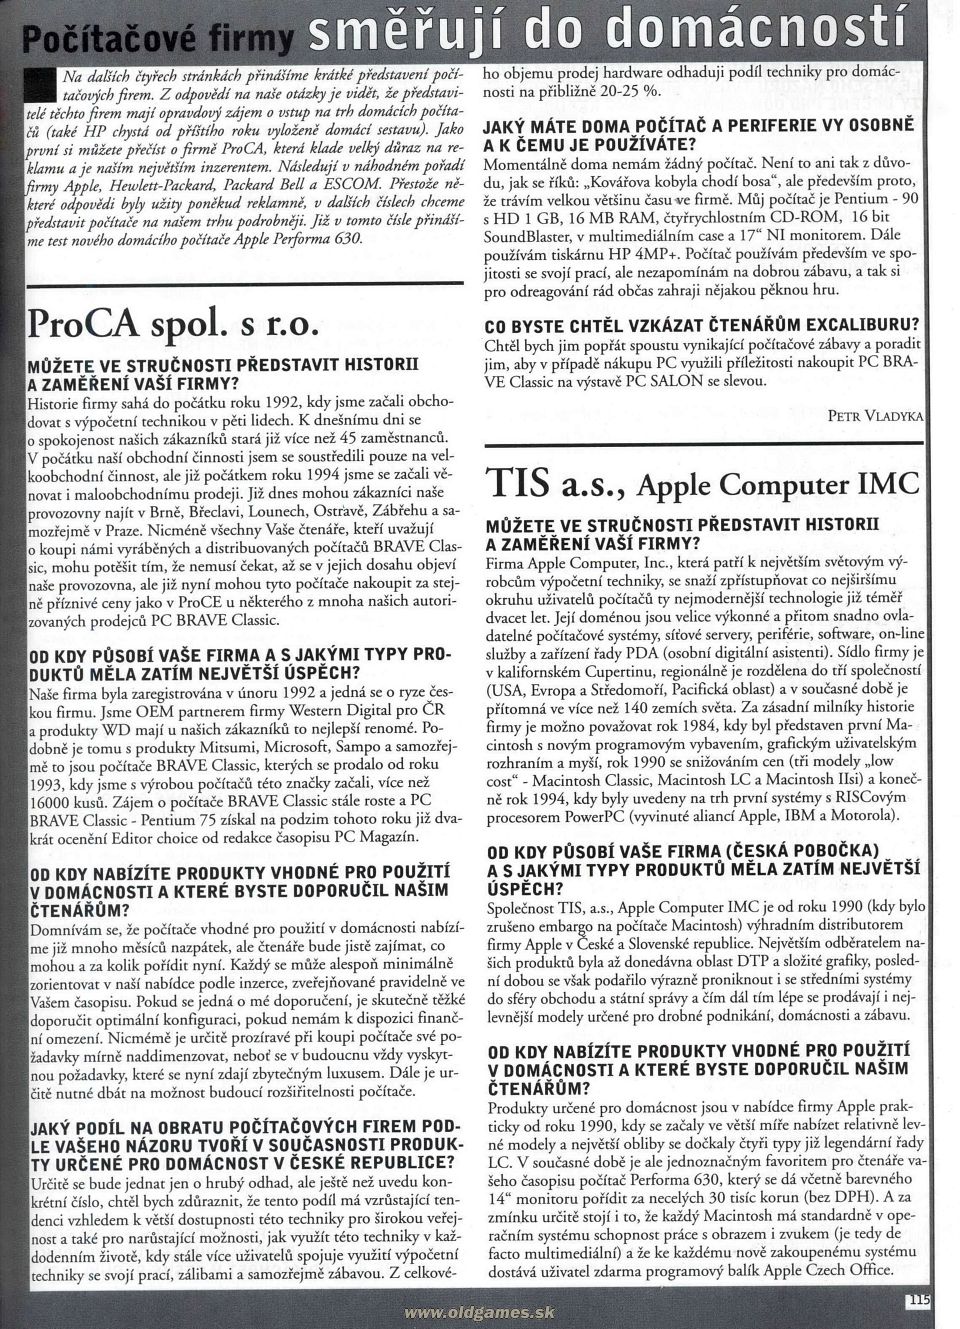 Počítačové firmy: ProCA, Apple